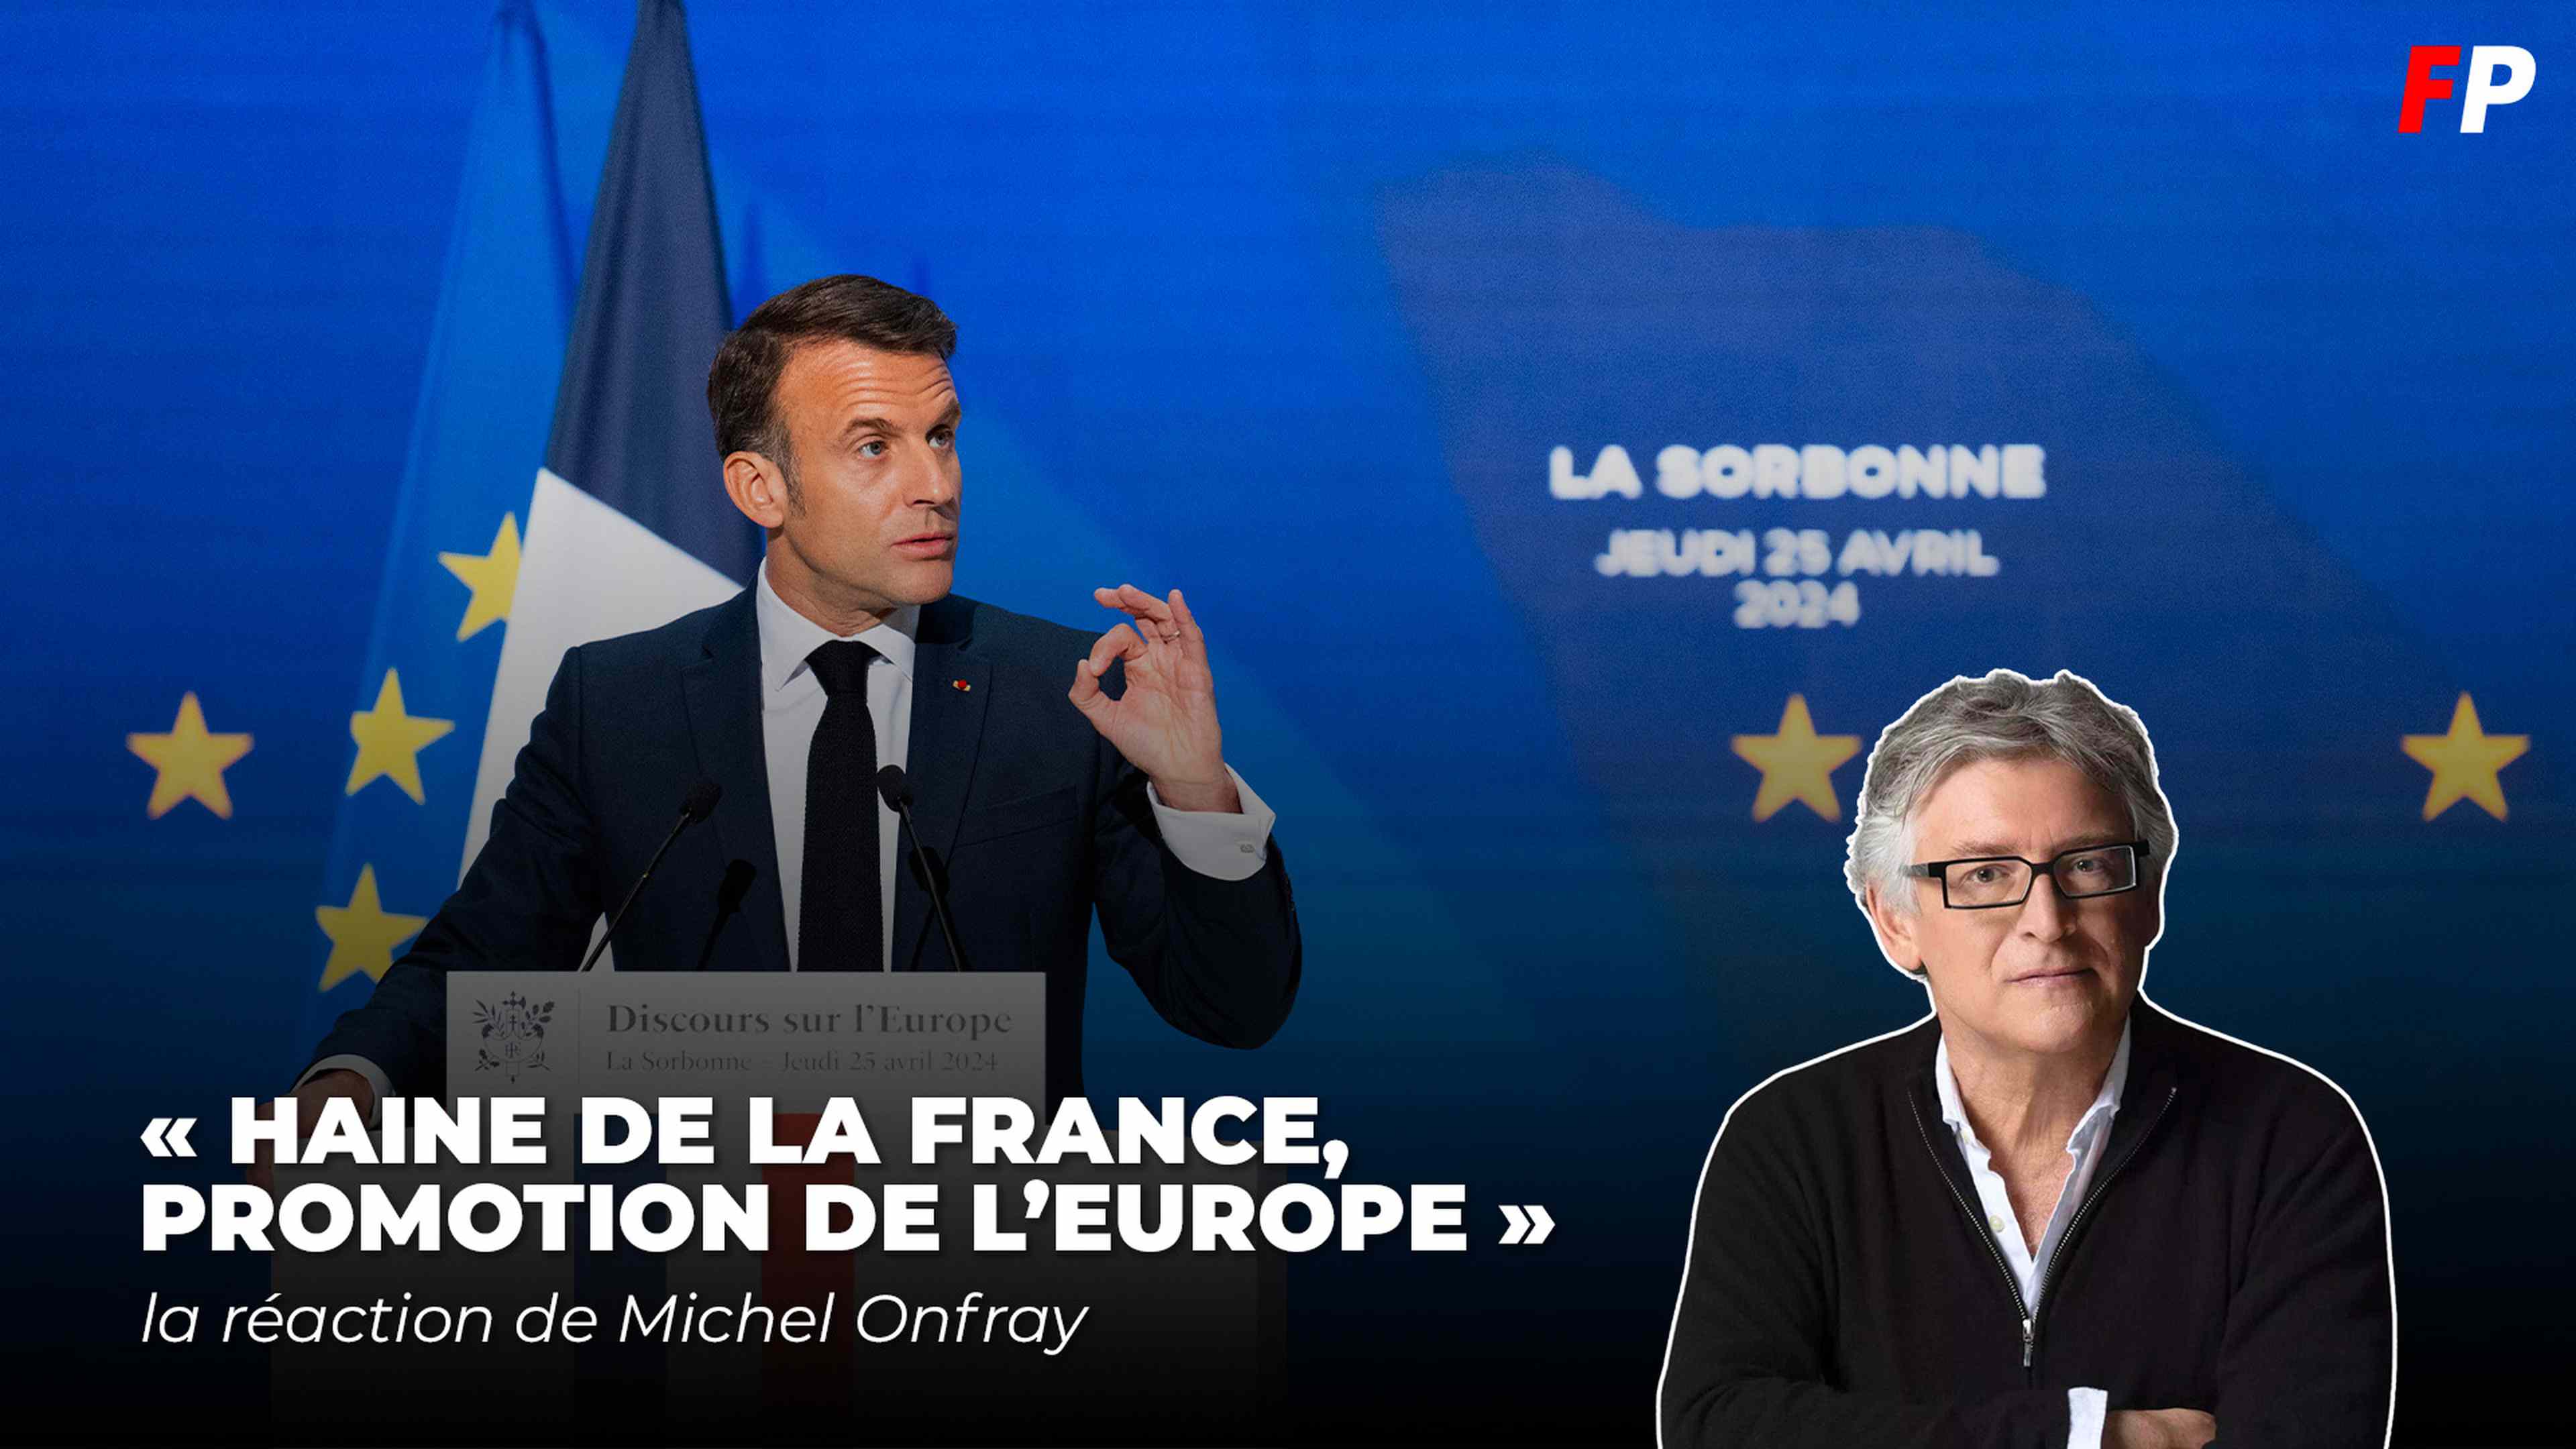 « Haine de la France, promotion de l'Europe » : Michel Onfray réagit au discours d'Emmanuel Macron à la Sorbonne